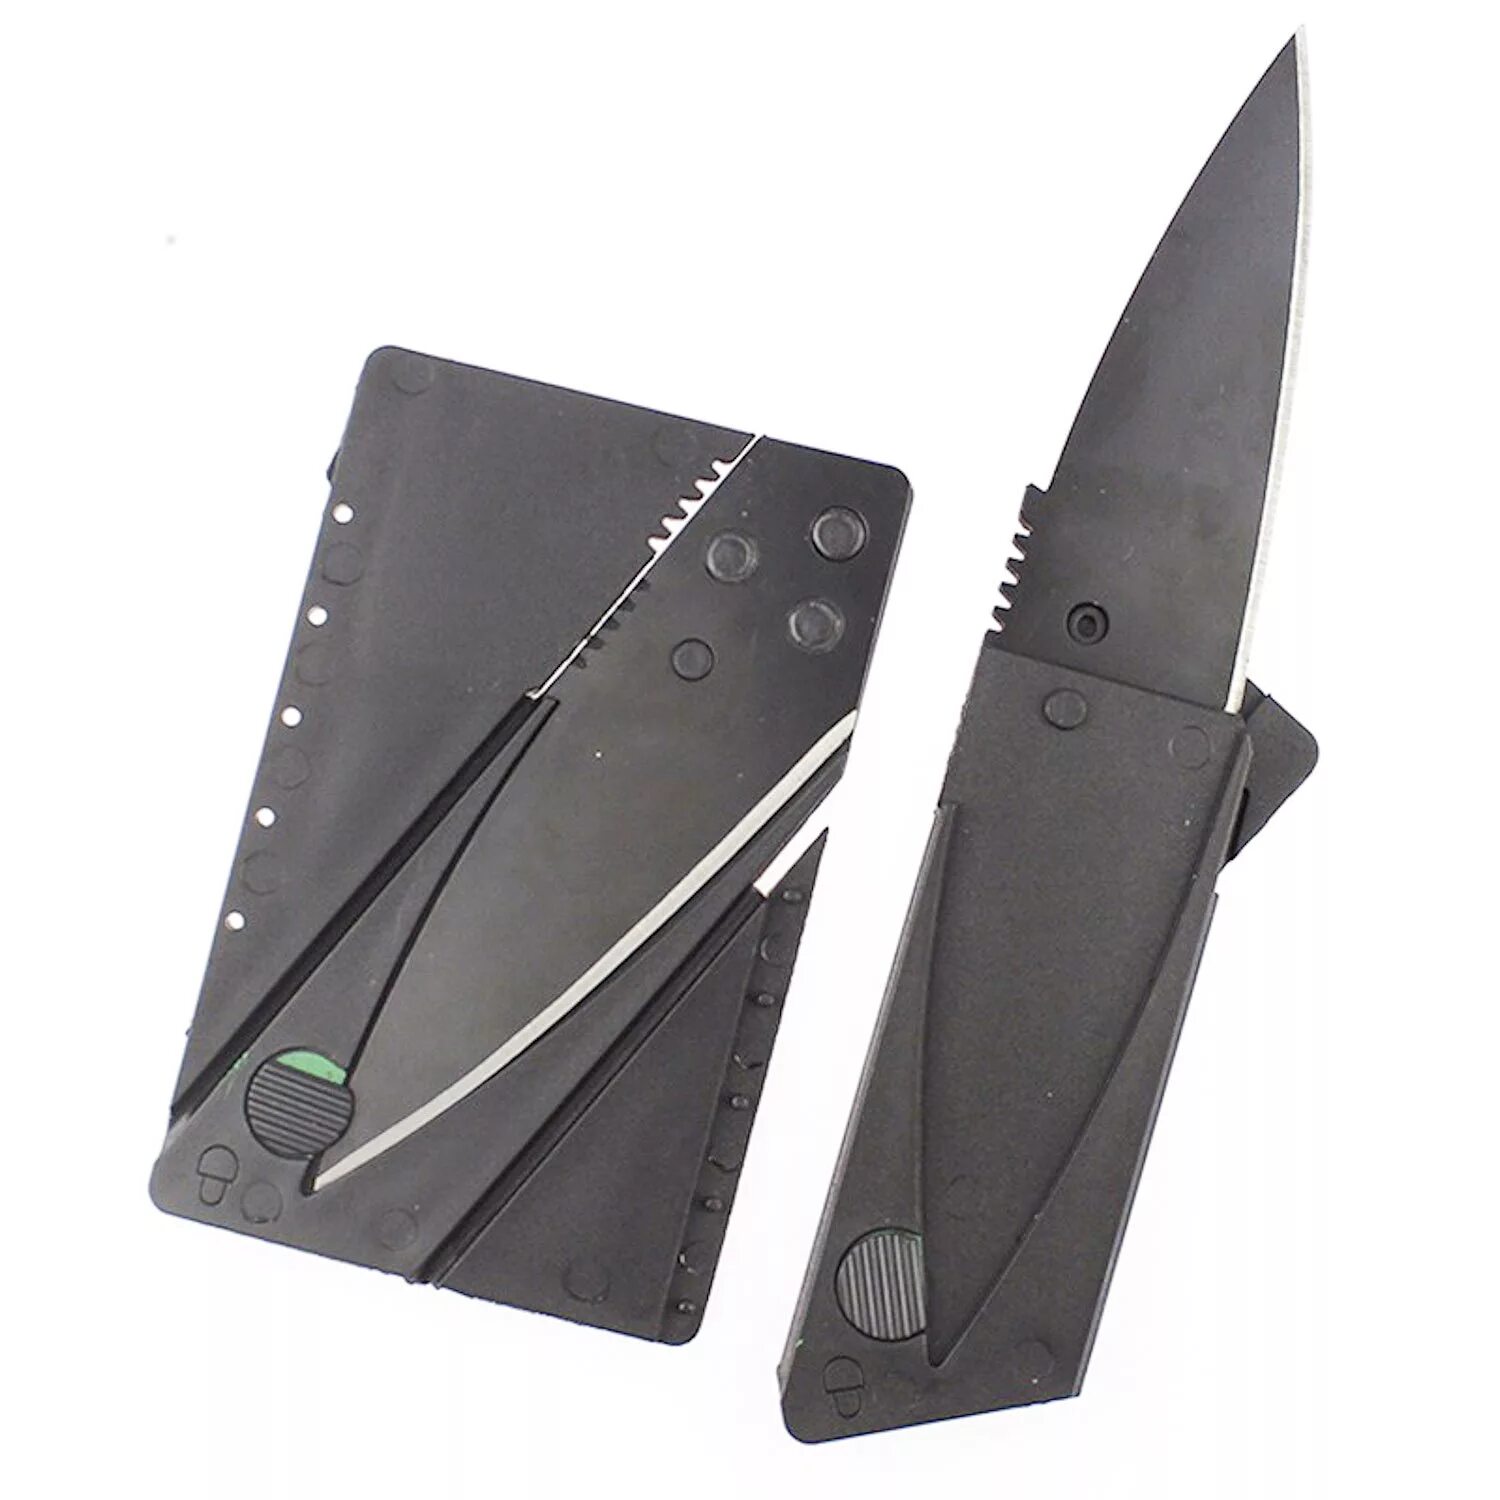 Нож кредитка. Нож кредитка Кардшарп. Нож кредитка Cardsharp оригинал. Нож визитка Cardsharp. SMARTBUY / нож складной.